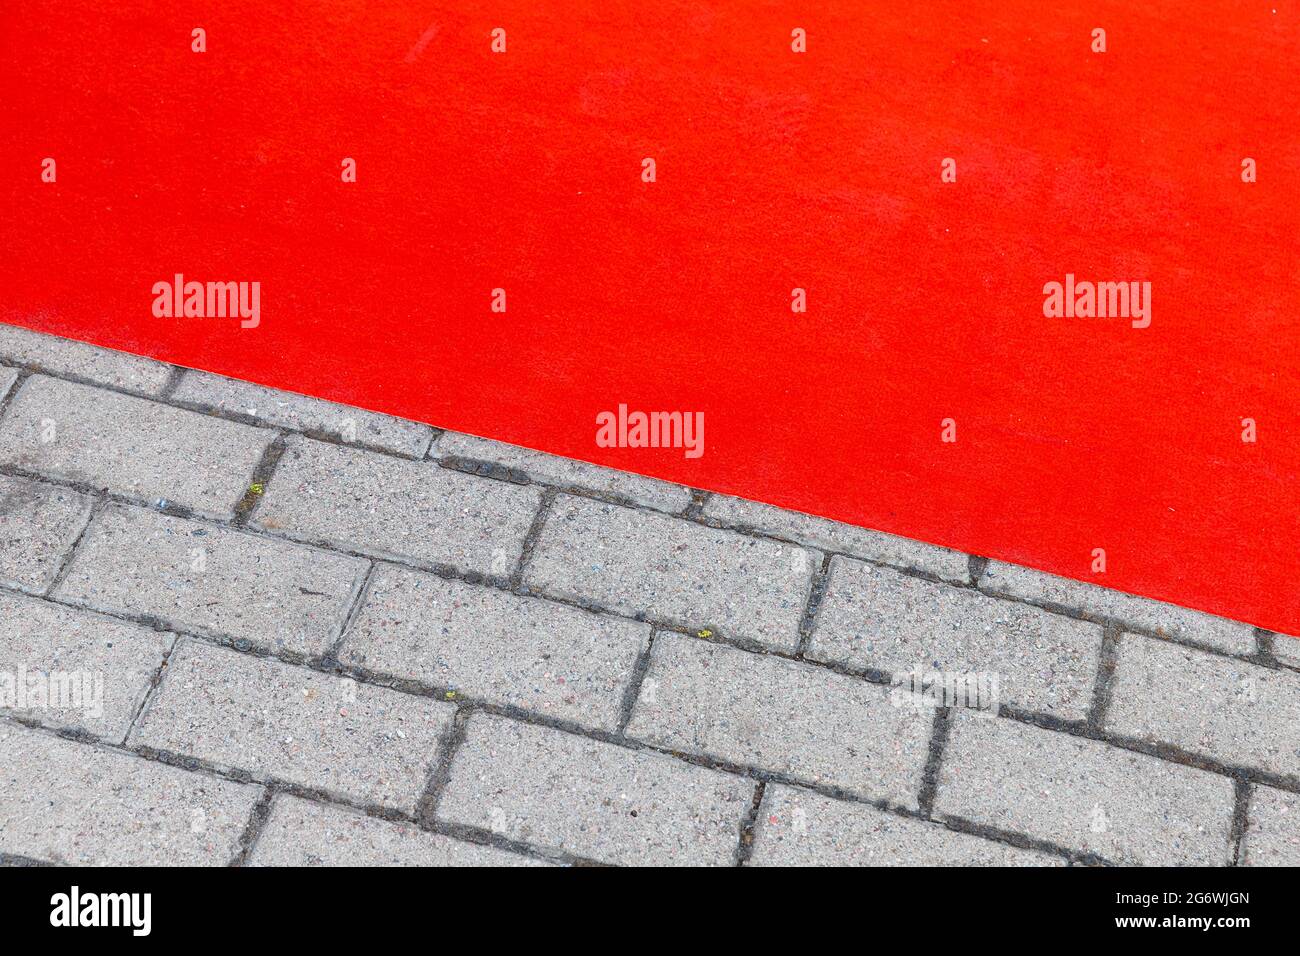 Roter Teppich legt sich über graue gepflasterte Straße, Hintergrund Foto Textur Stockfoto